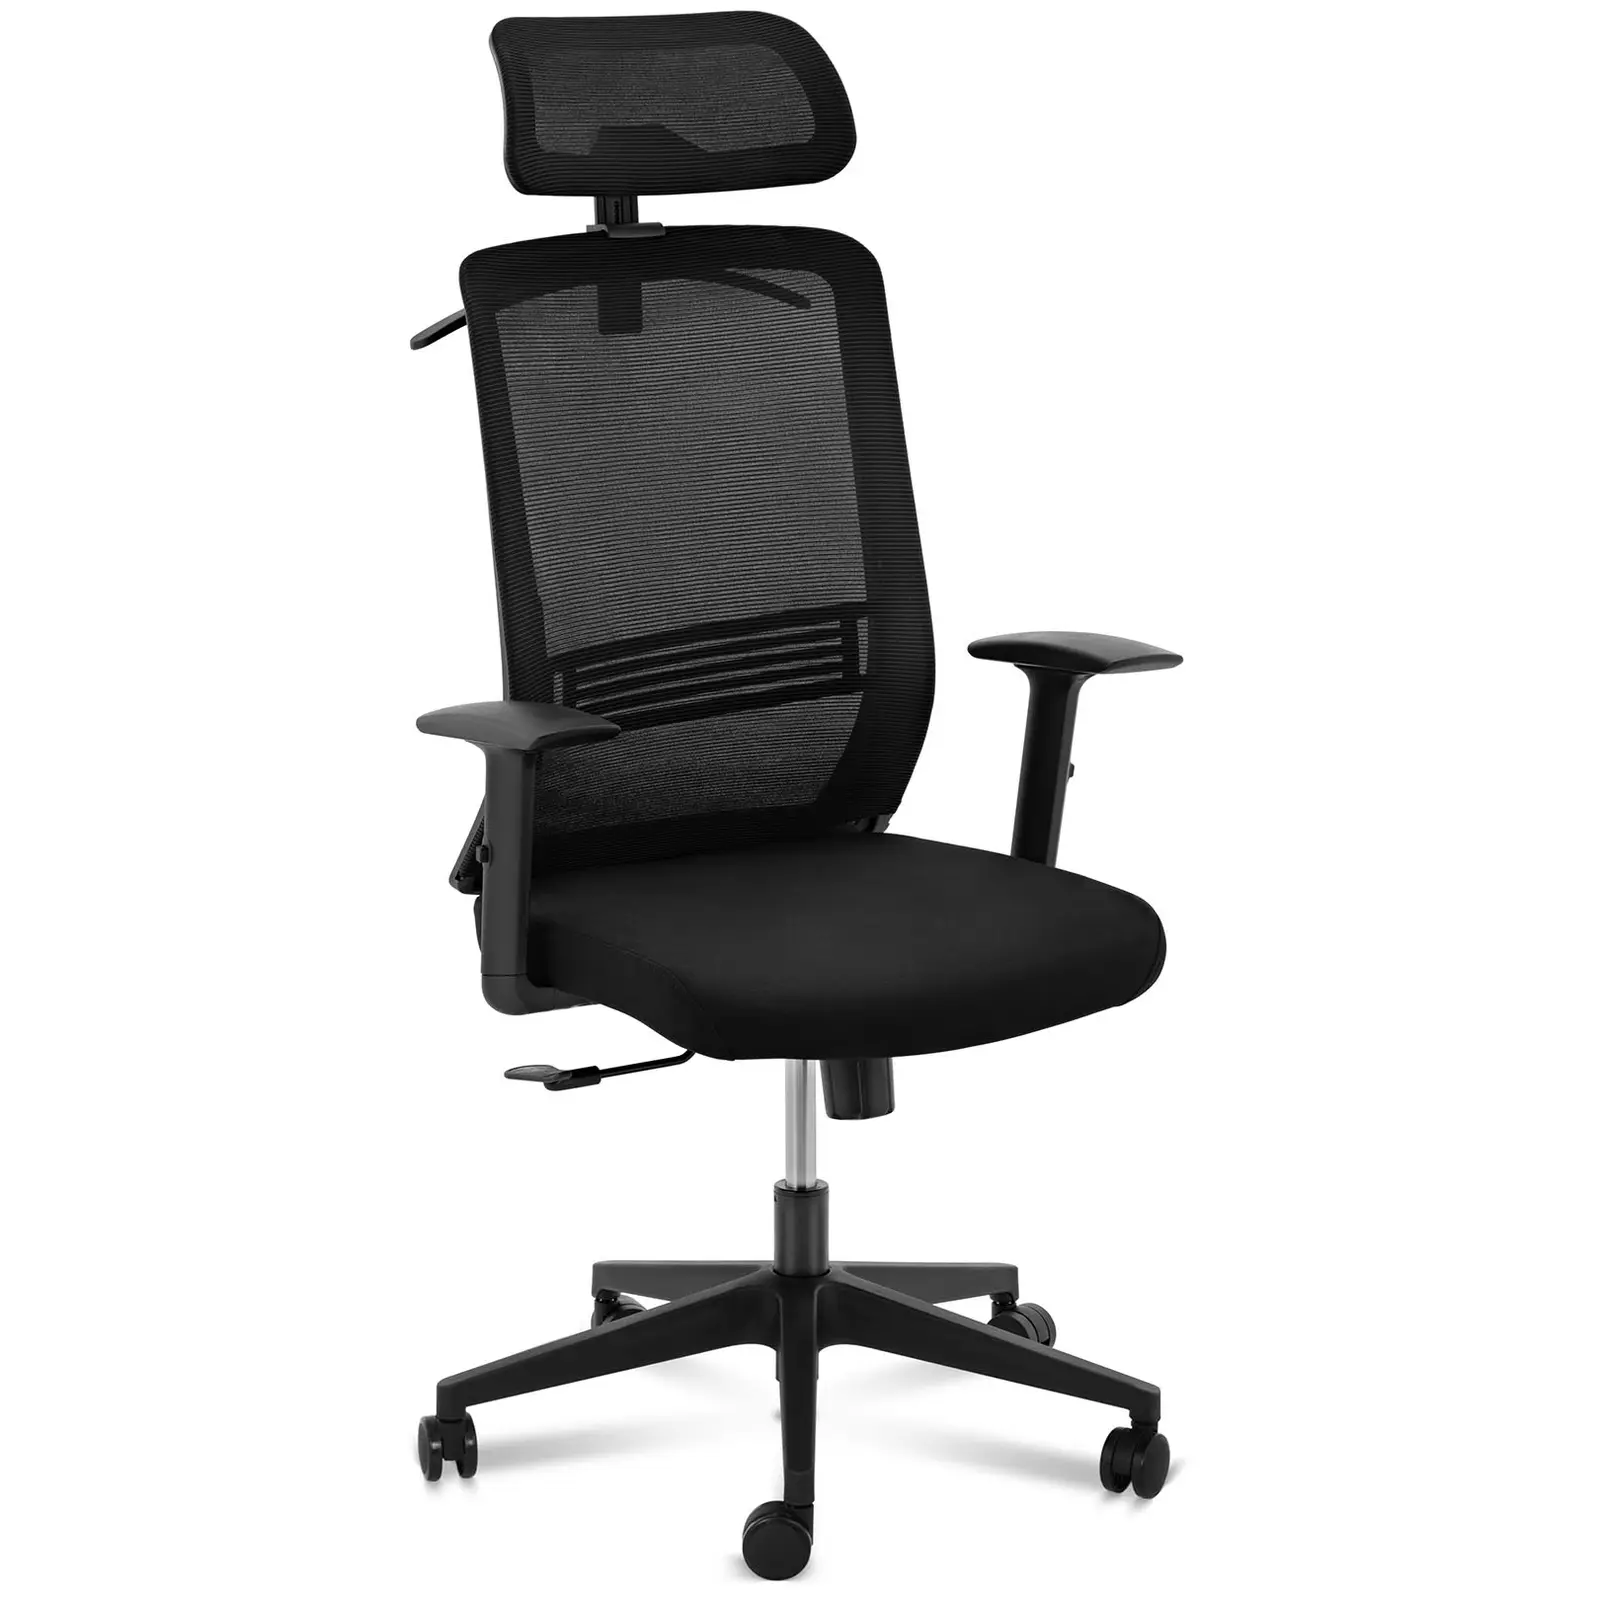 Fotel biurowy - oparcie z siatki - zagłówek - siedzisko 50 x 61 cm - do 150 kg - czarny